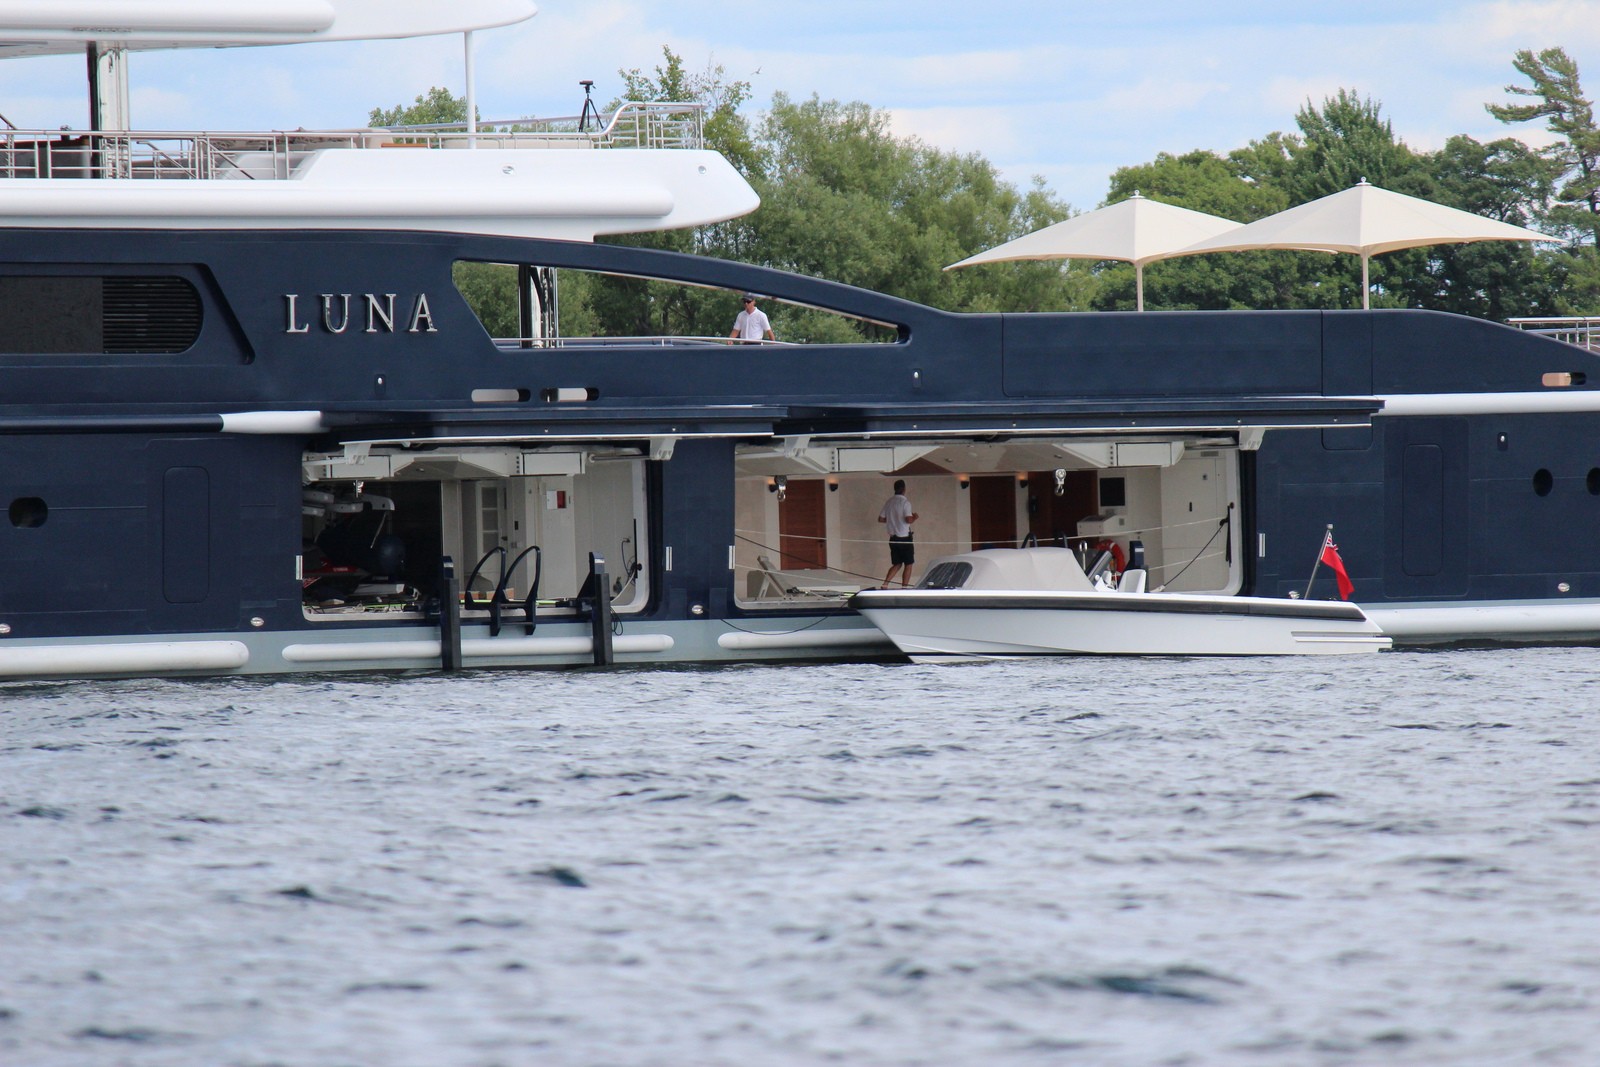 The 115m Yacht LUNA